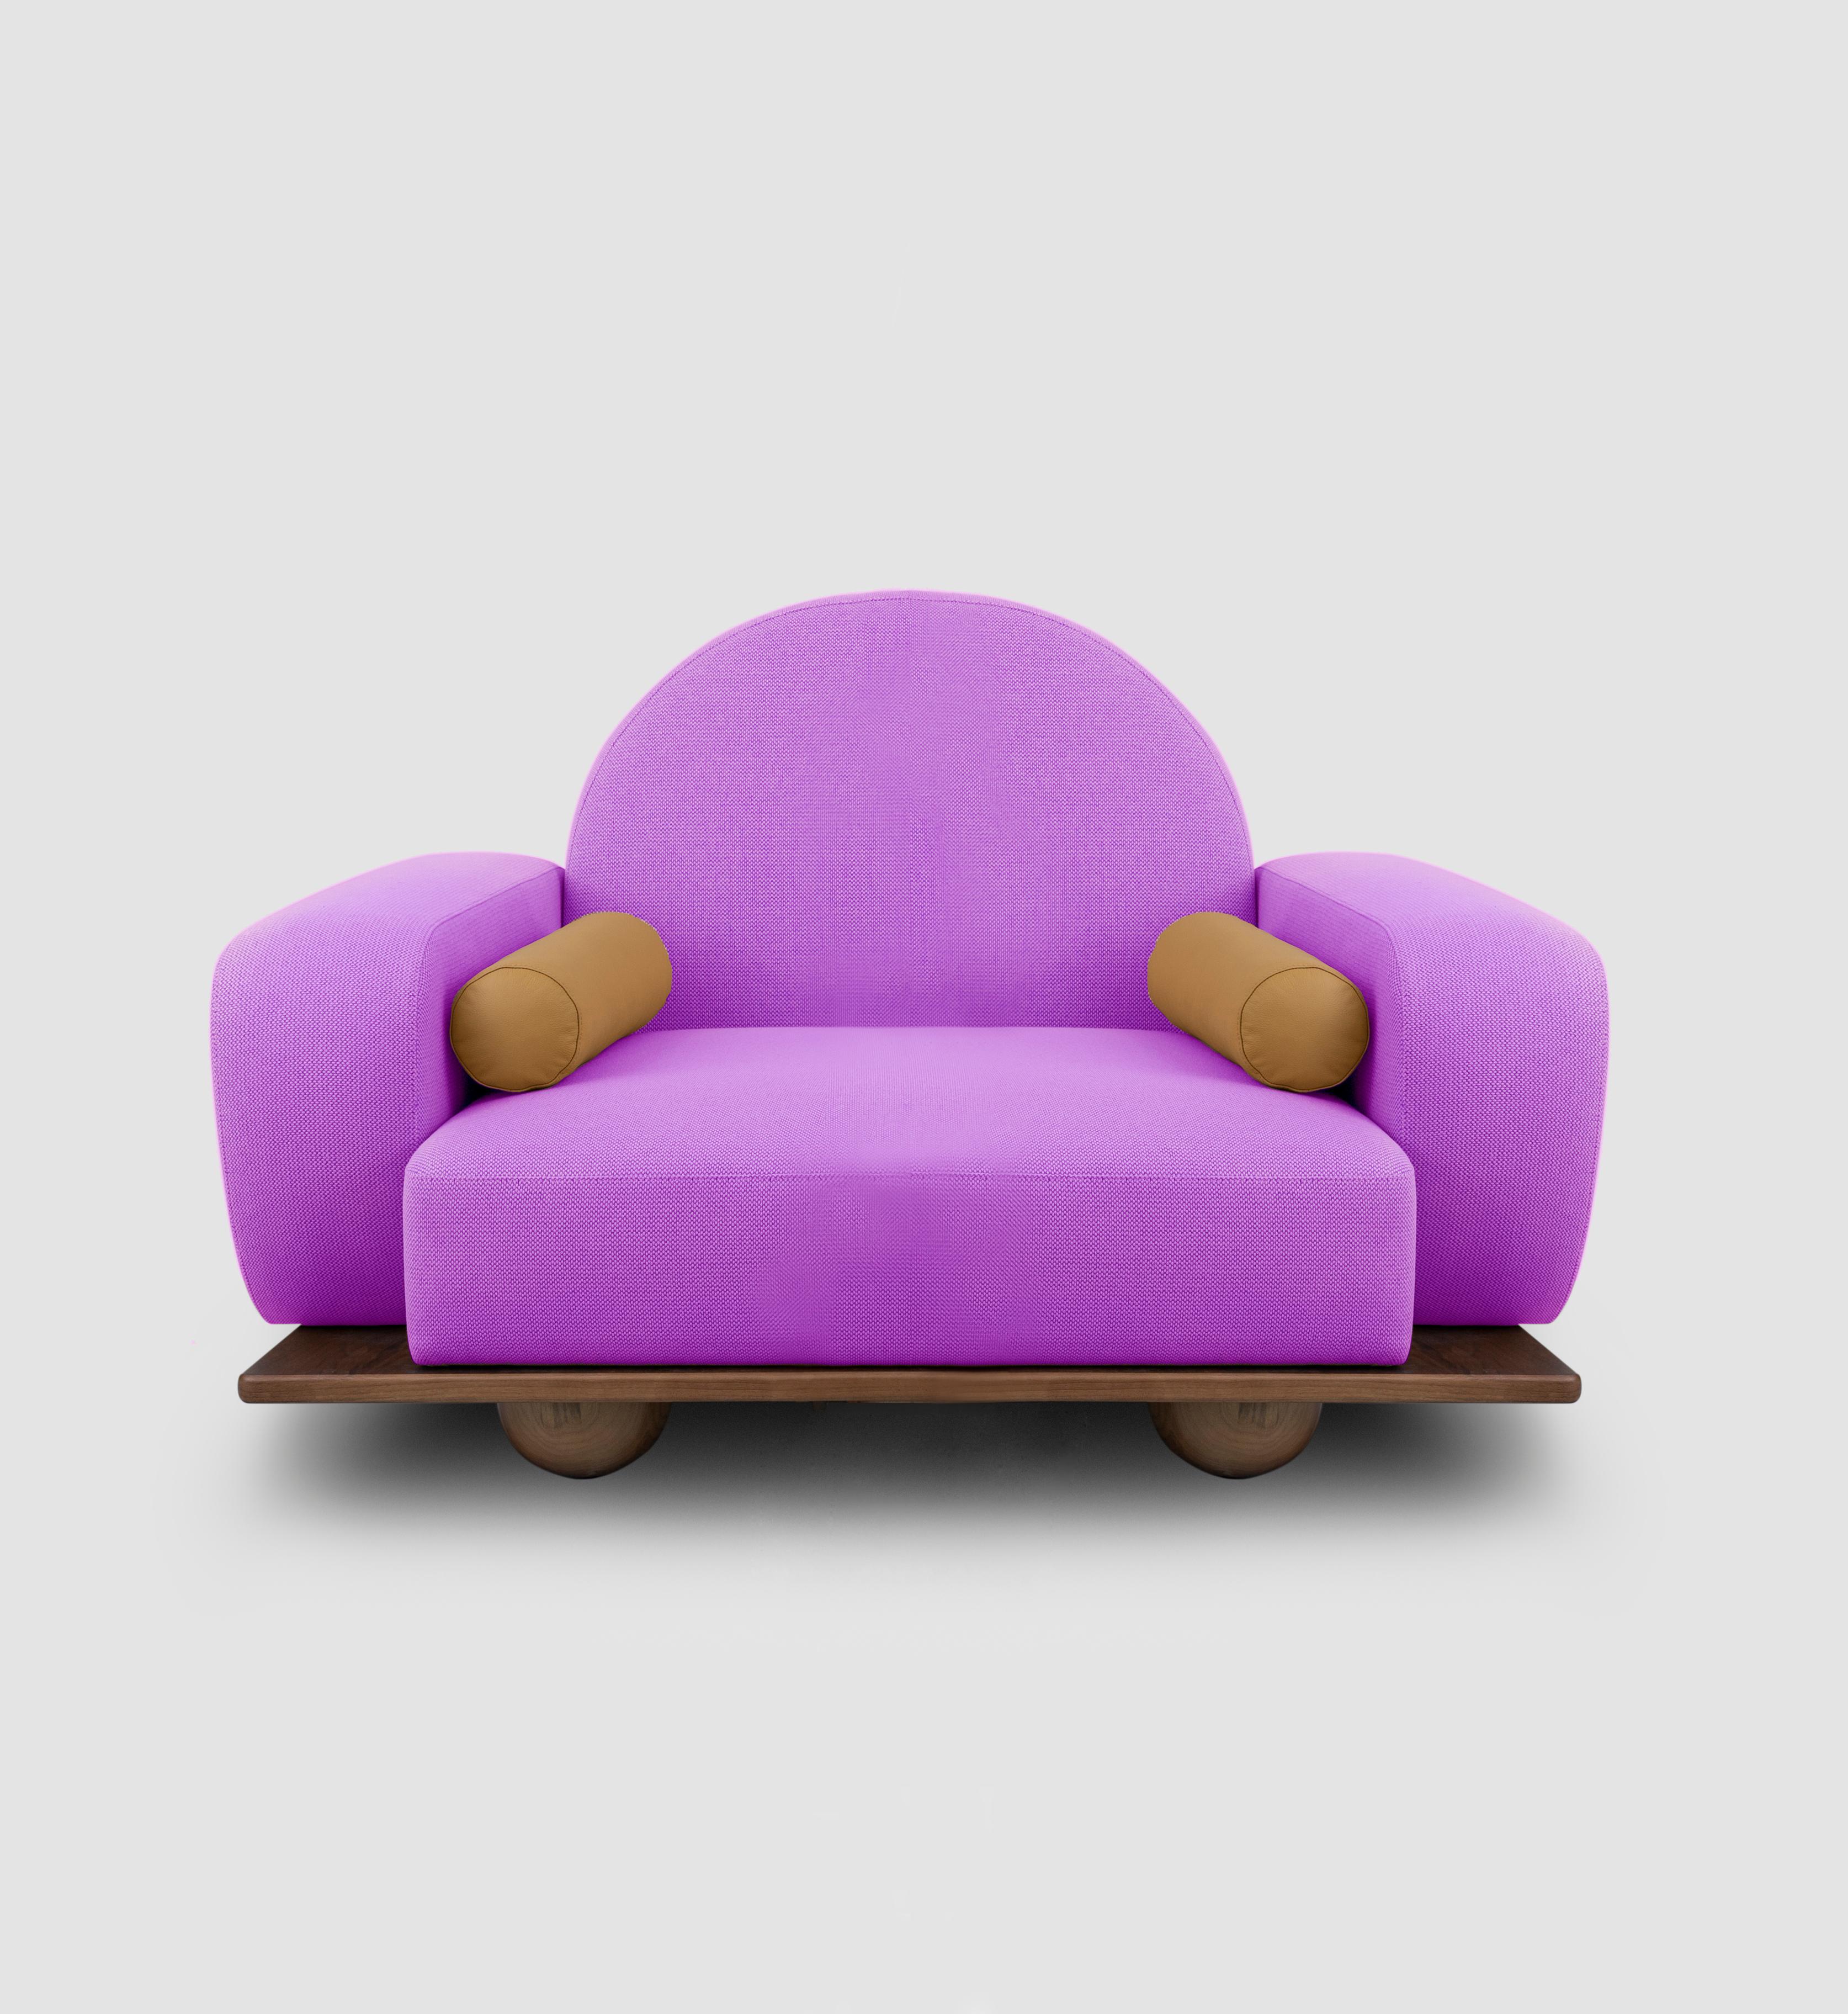 Der Sessel Beice ist so gestaltet, dass er das Gefühl vermittelt, auf einer Zuckerwattewolke zu sitzen. Die Kombination aus seiner Farbe, der bogenförmigen Rückenlehne, den runden Kanten und den Kugelfüßen aus Nussbaumholz schafft ein verträumtes,